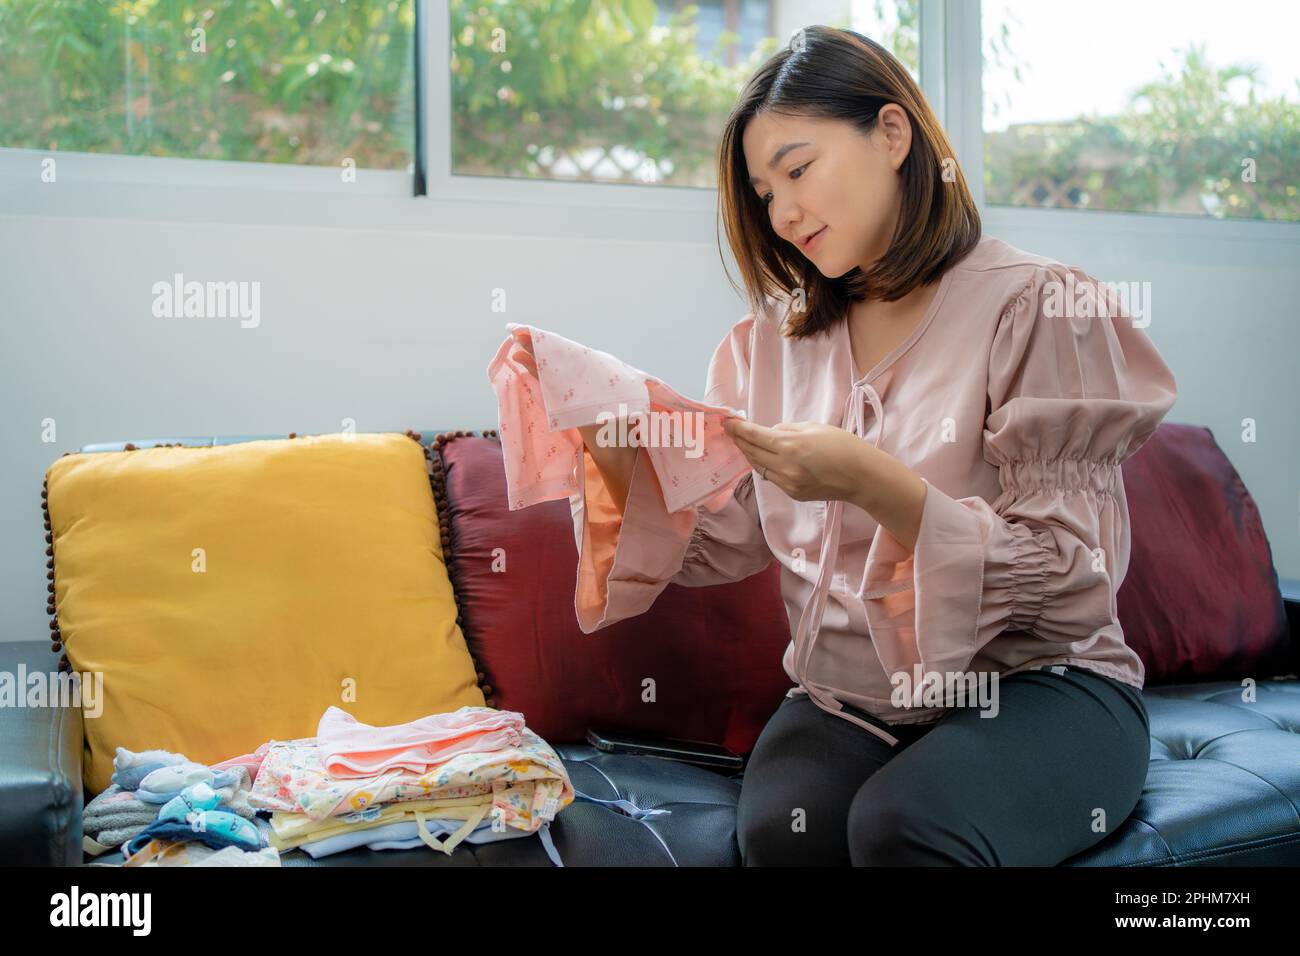 Une jeune femme asiatique heureuse, vêtue de vêtements de maternité, souriant et regardant un nouveau vêtement de bébé qu'elle tient tout en étant assise dans sa maison lumineuse Banque D'Images